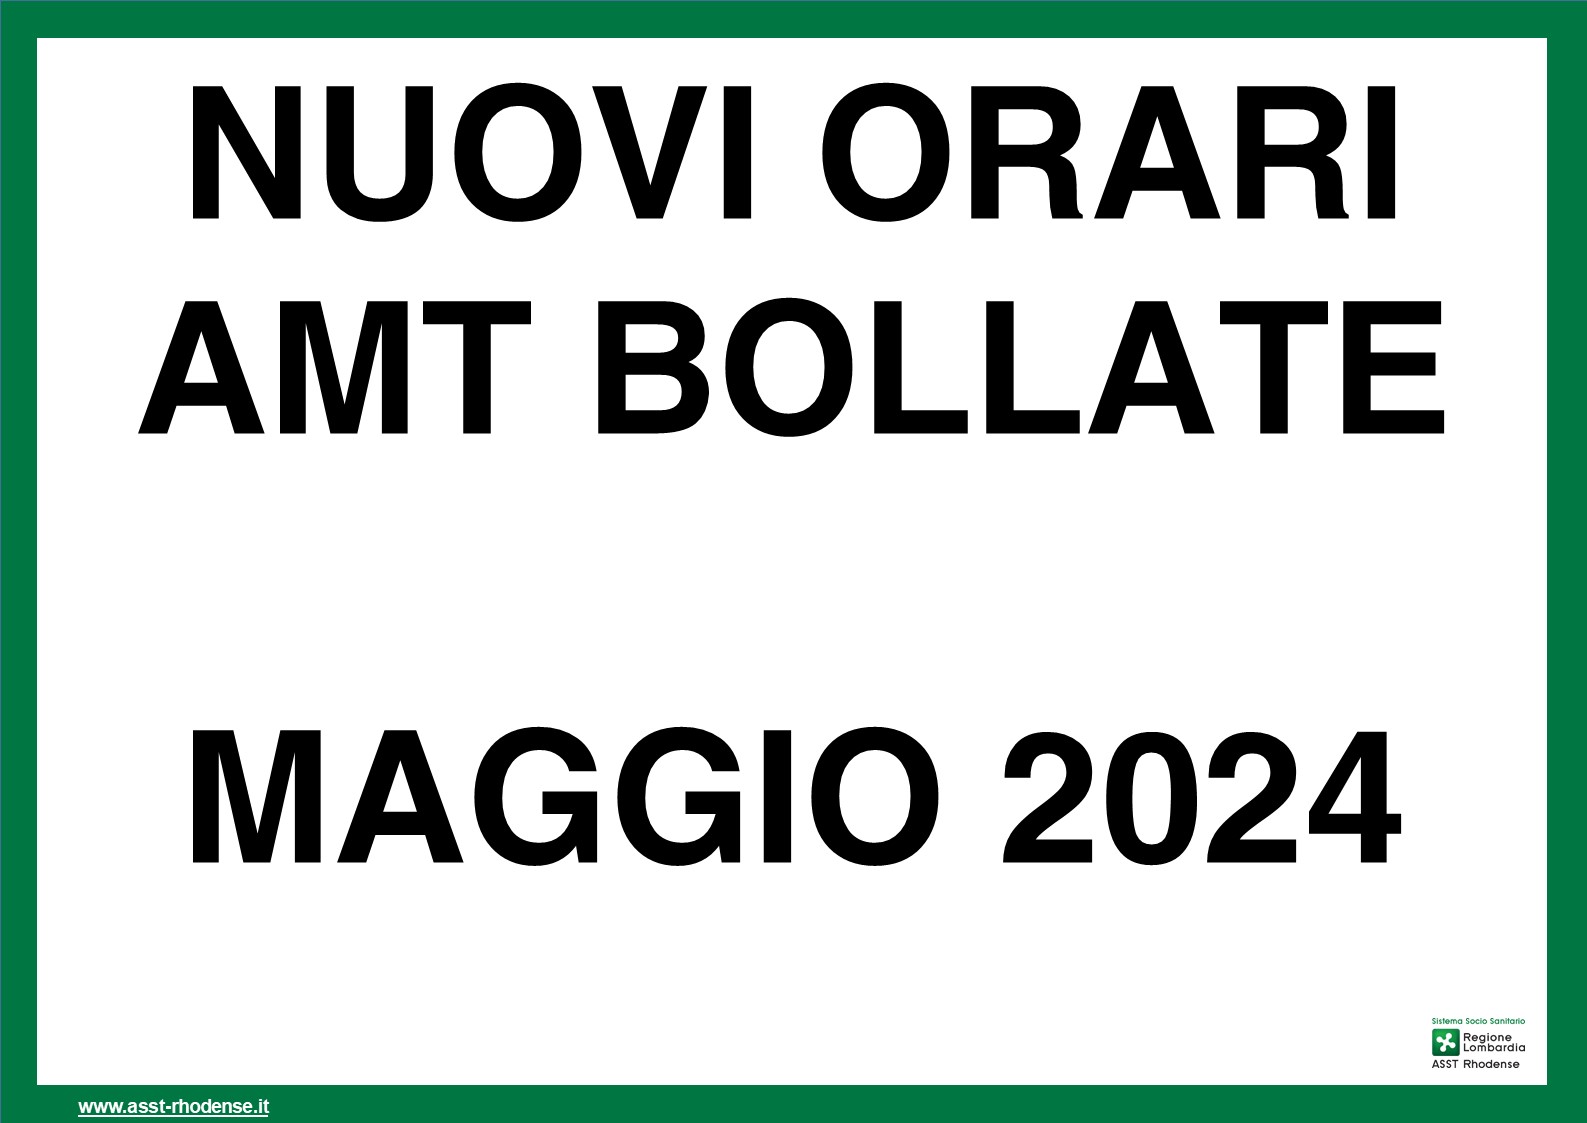 AMT BOLLATE MAGGIO 2024